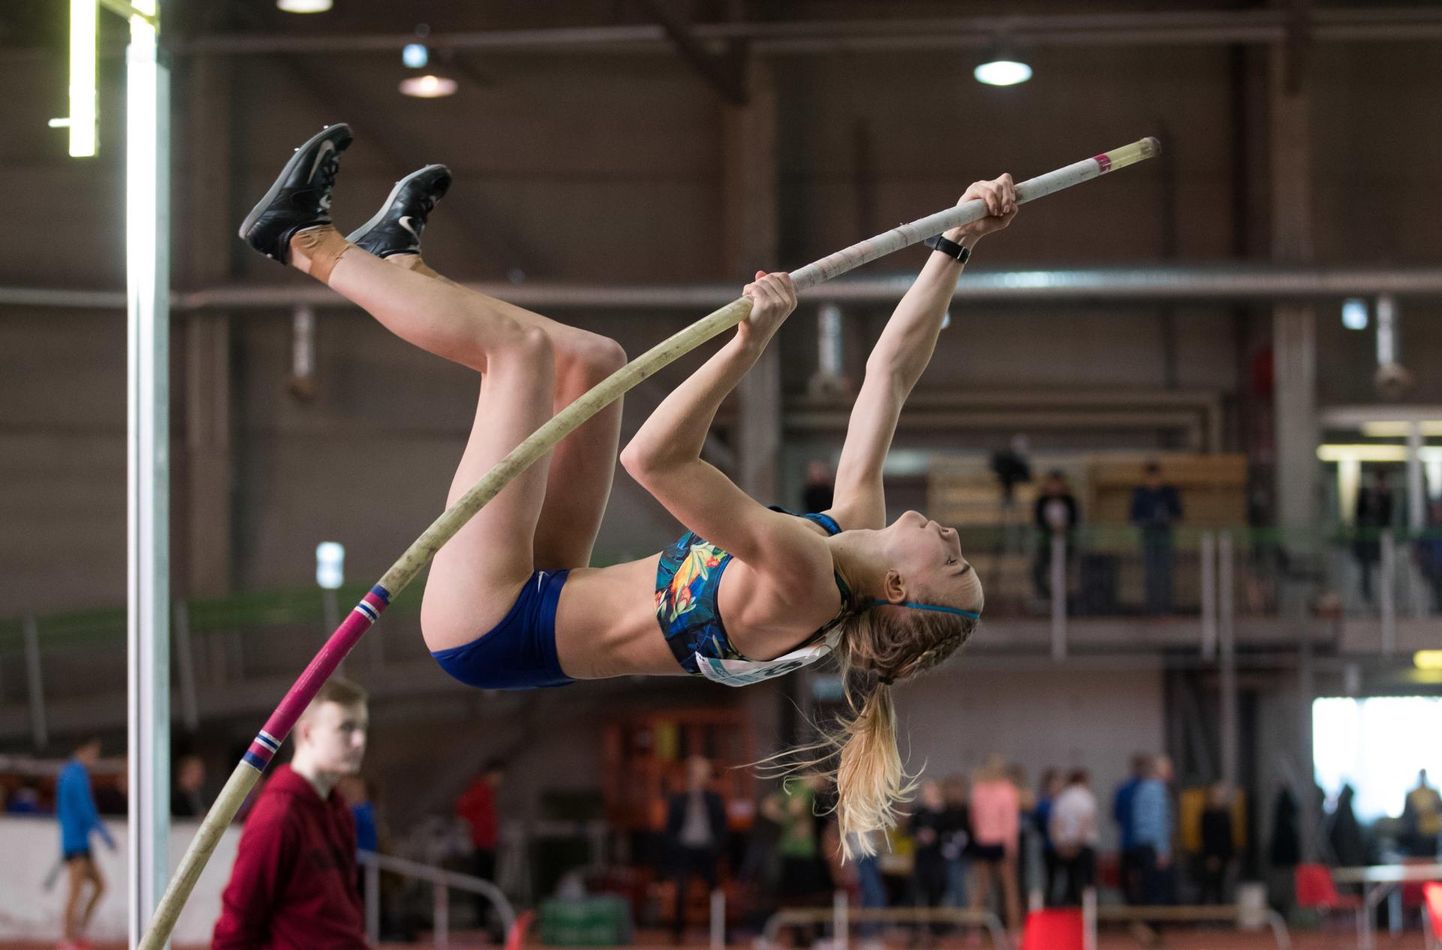 Marleen Mülla esindab Eesti koondist kuni 20-aastastele atleetidele mõeldud rahvusvahelistel kergejõustikuvõistlustel Valgevenes teivashüppes.